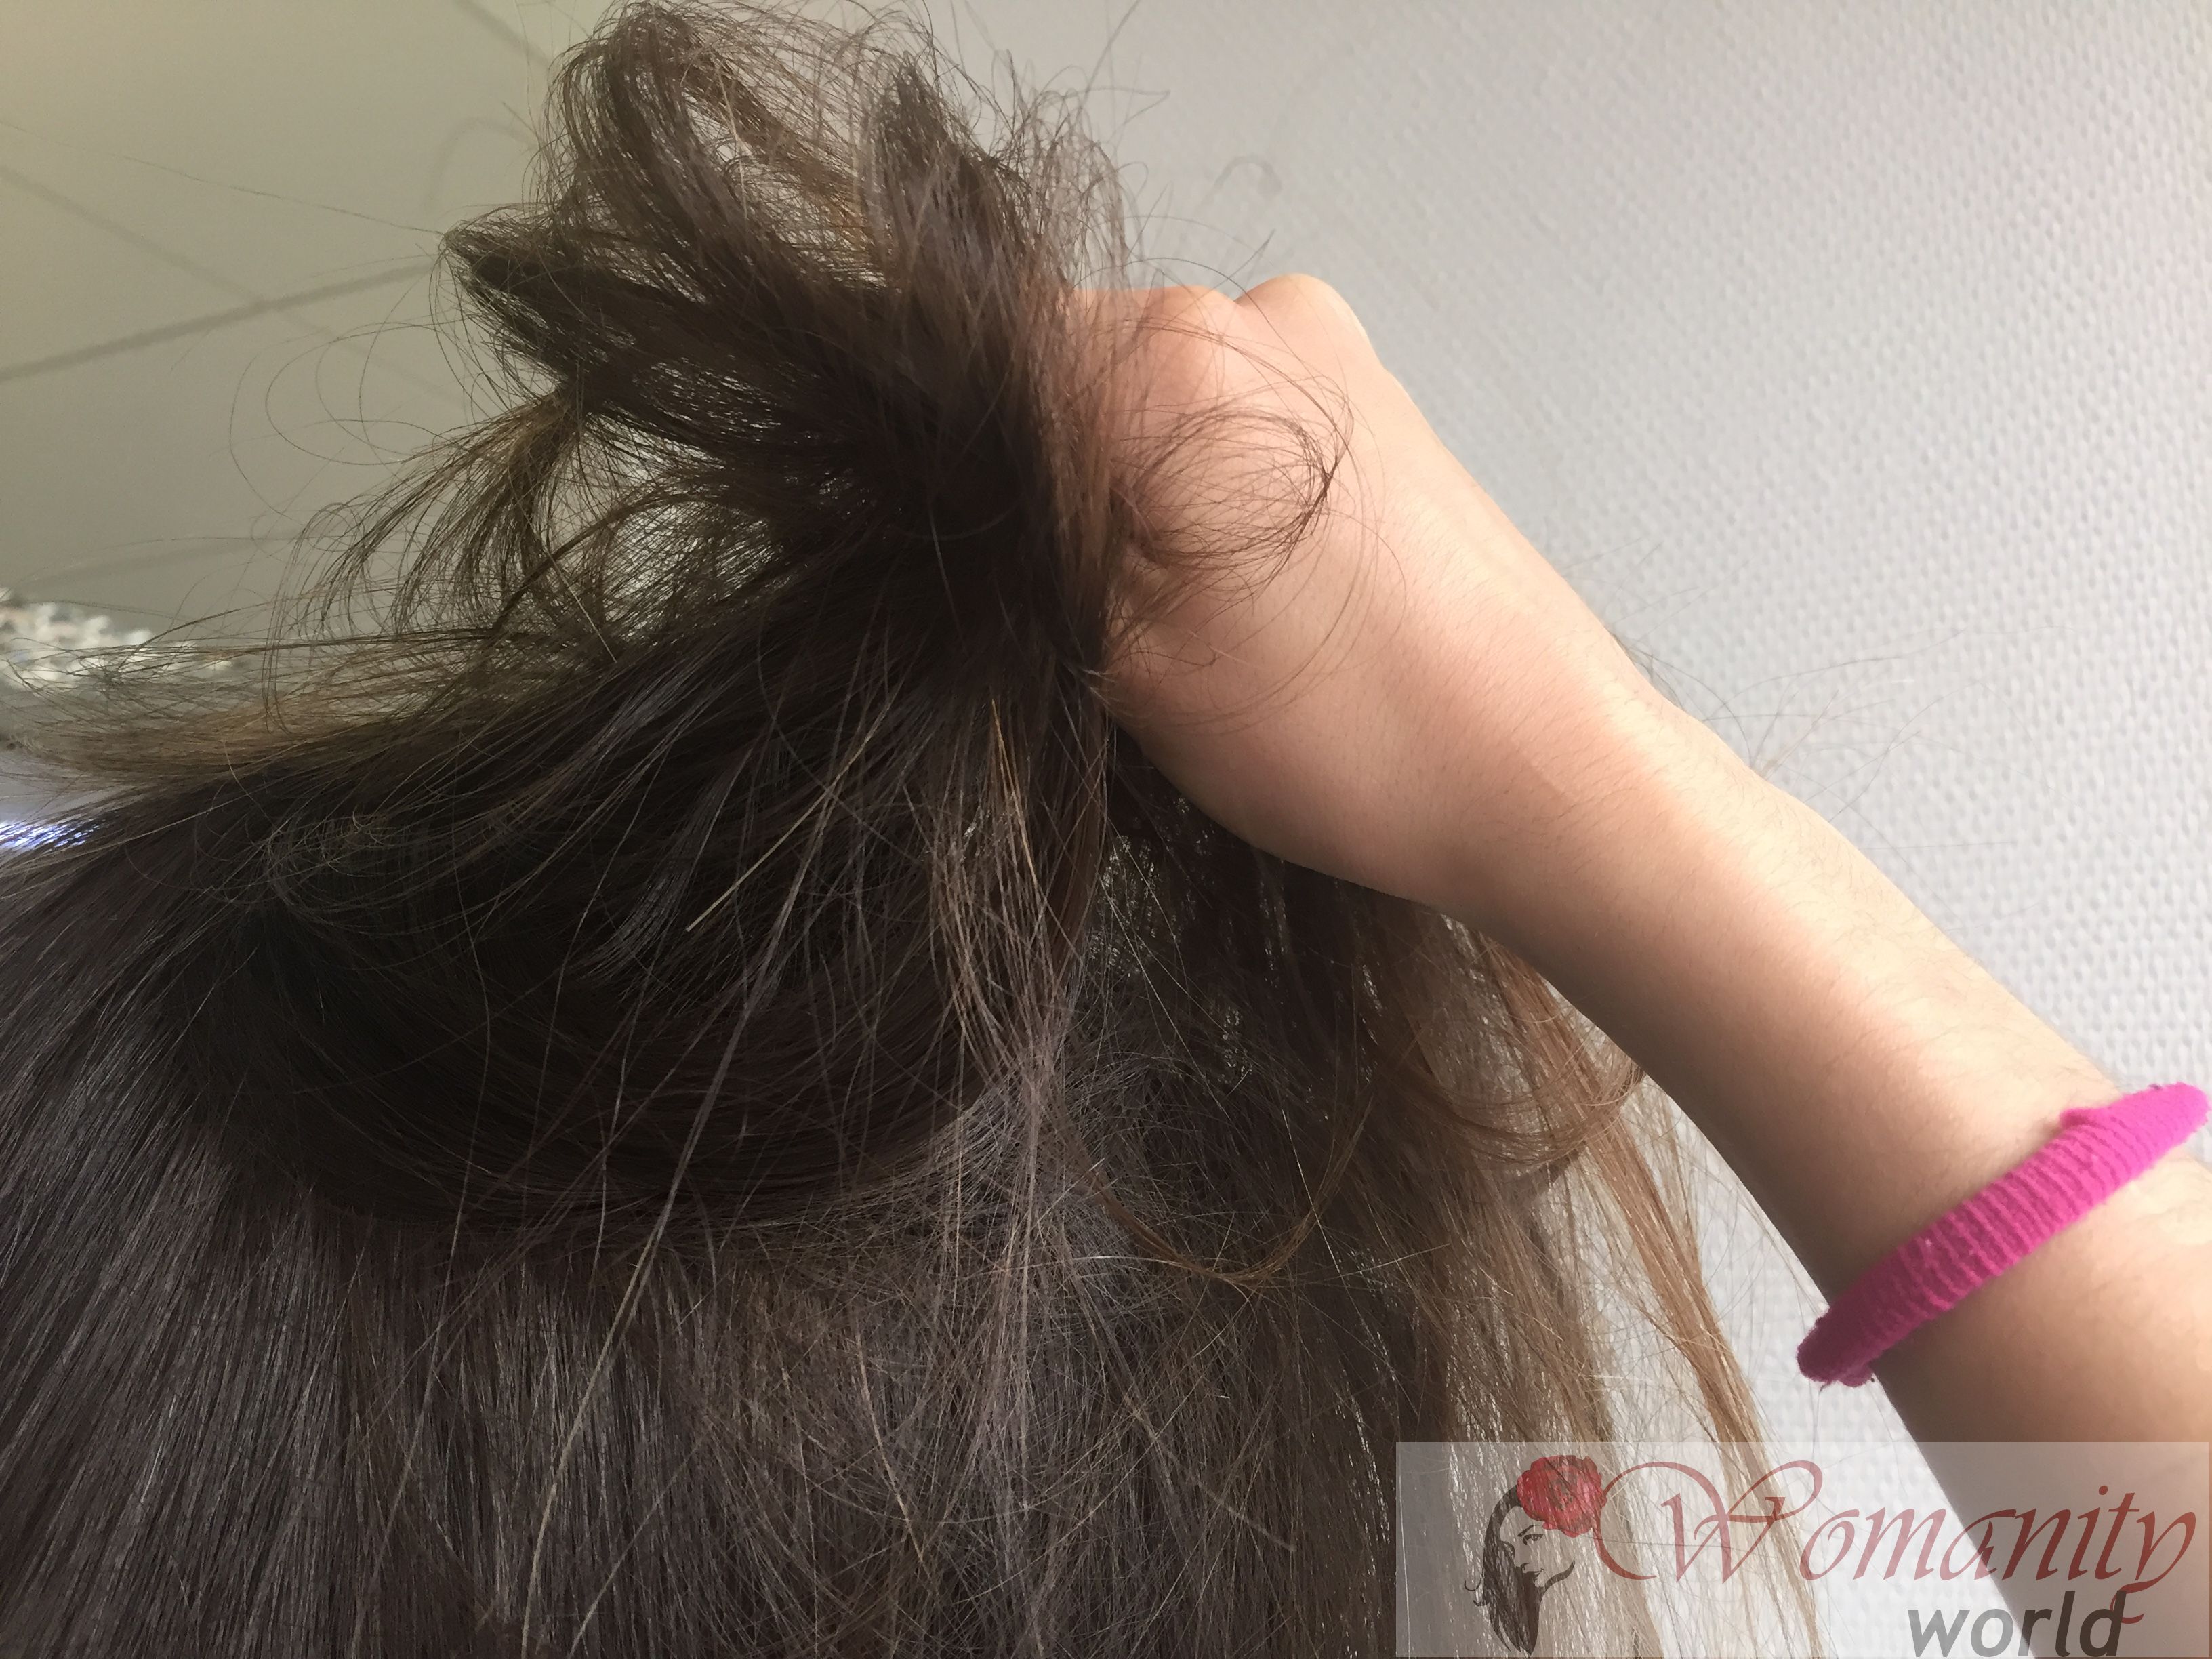 Trichotillomanie, Haare ziehen tritt auf, wenn Erleichterung oder Freude